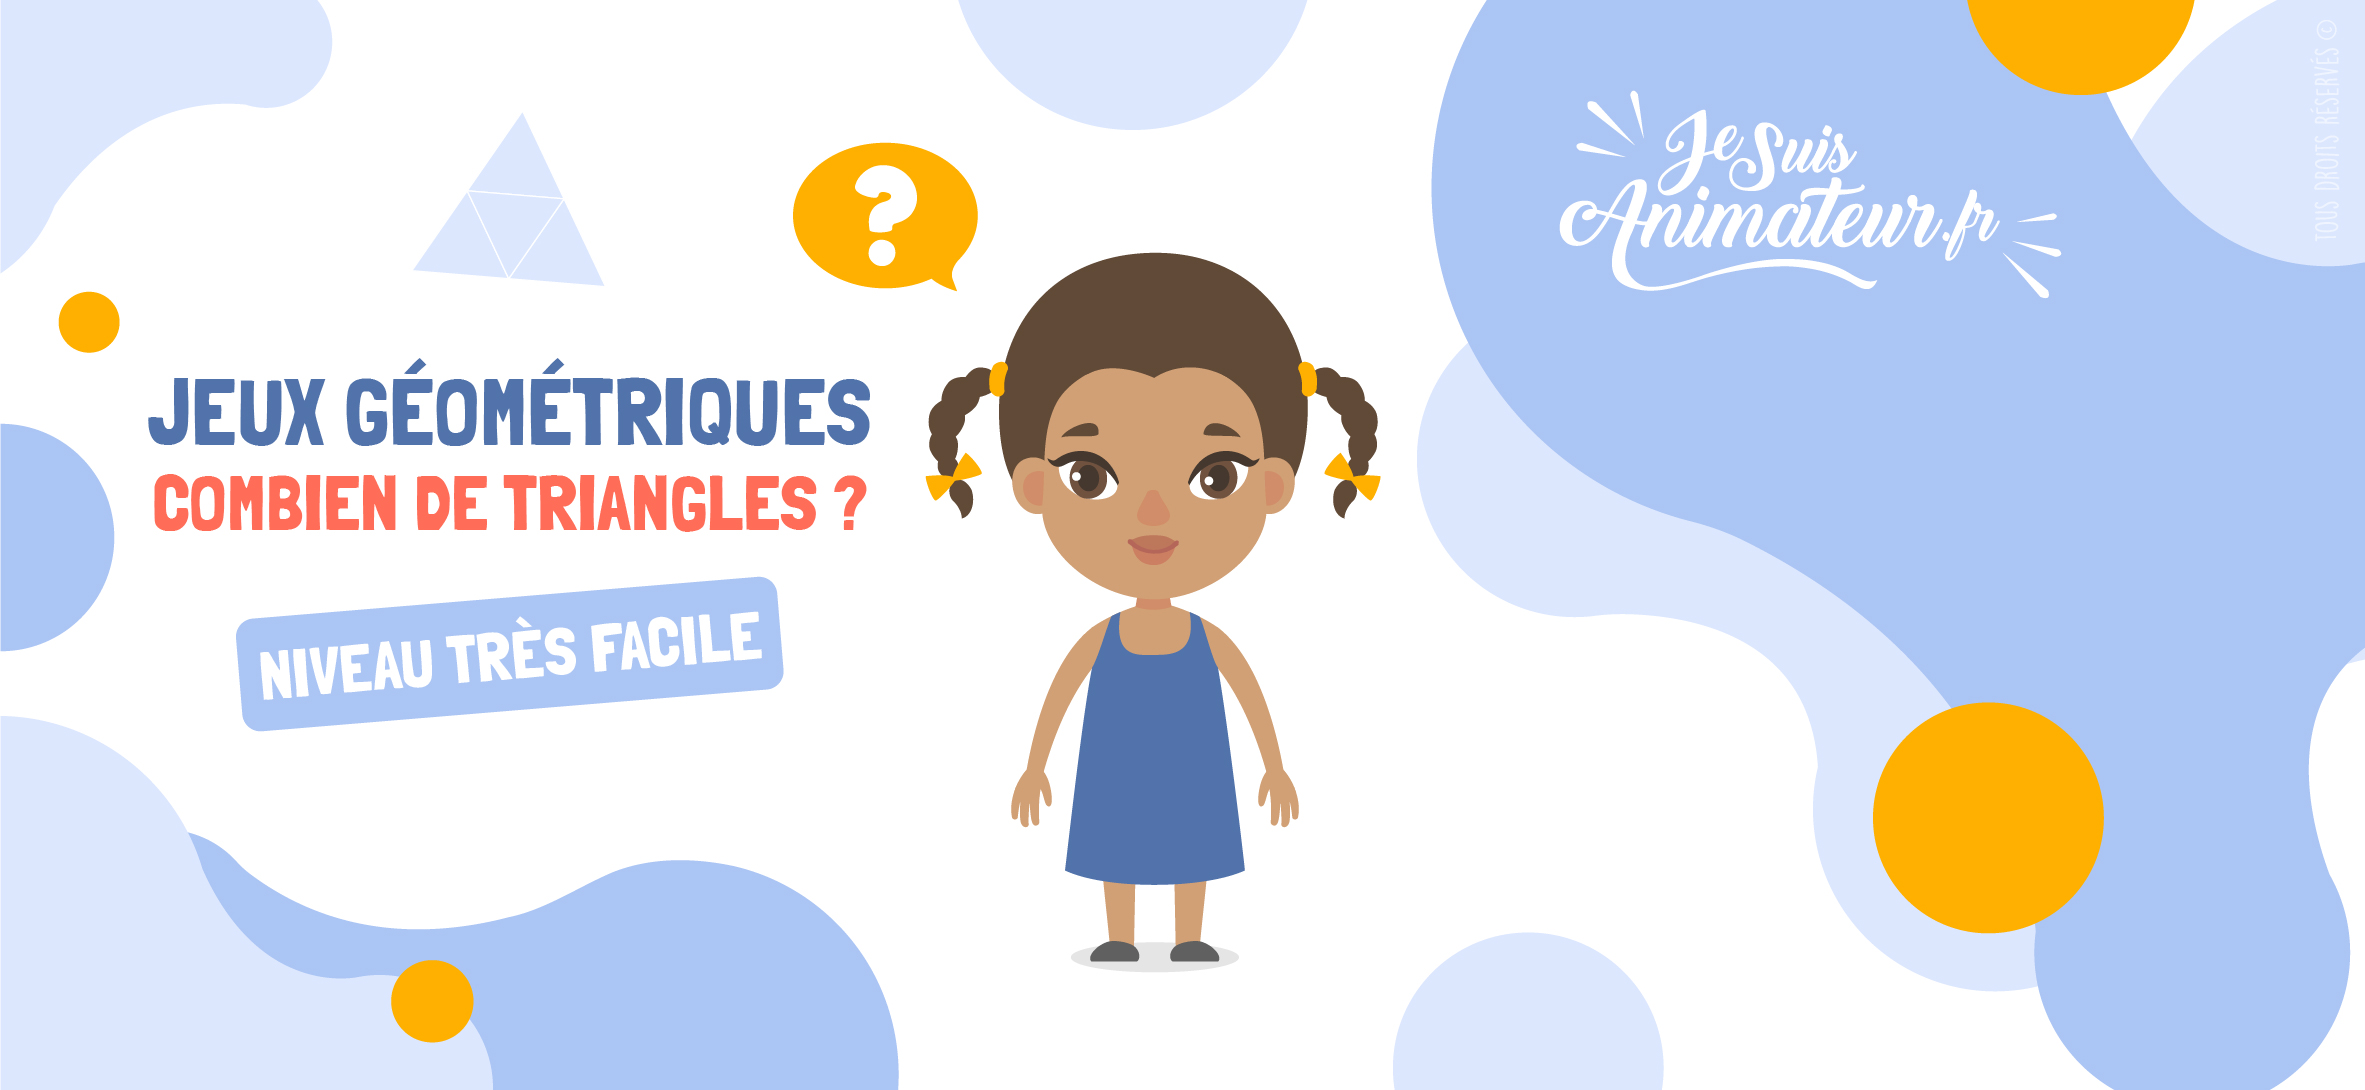 Combien de triangles comptez-vous dans ces figures ? (niveau très facile) | JeSuisAnimateur.fr